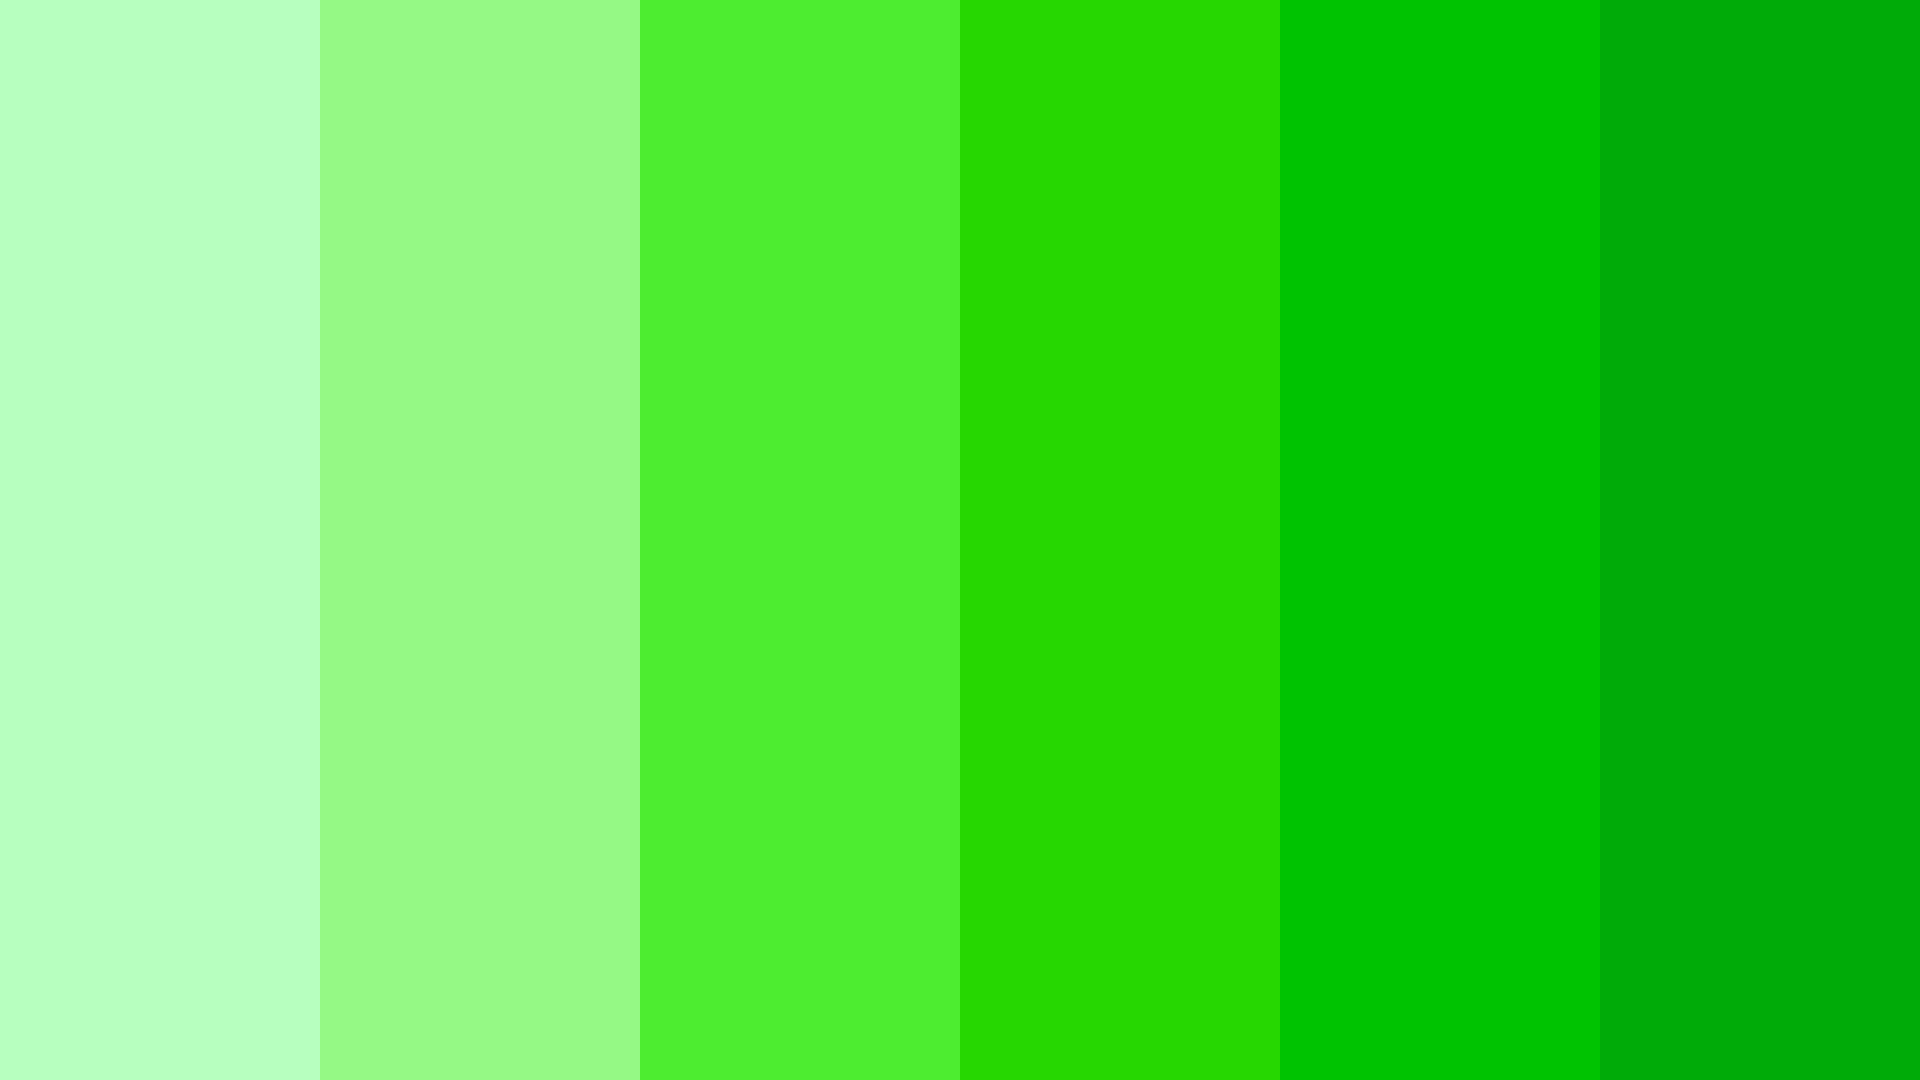 Сообщение зеленого цвета. Зеленый цвет. Яркий зеленый цвет. Насыщенный зеленый цвет. Палитра зеленого цвета.